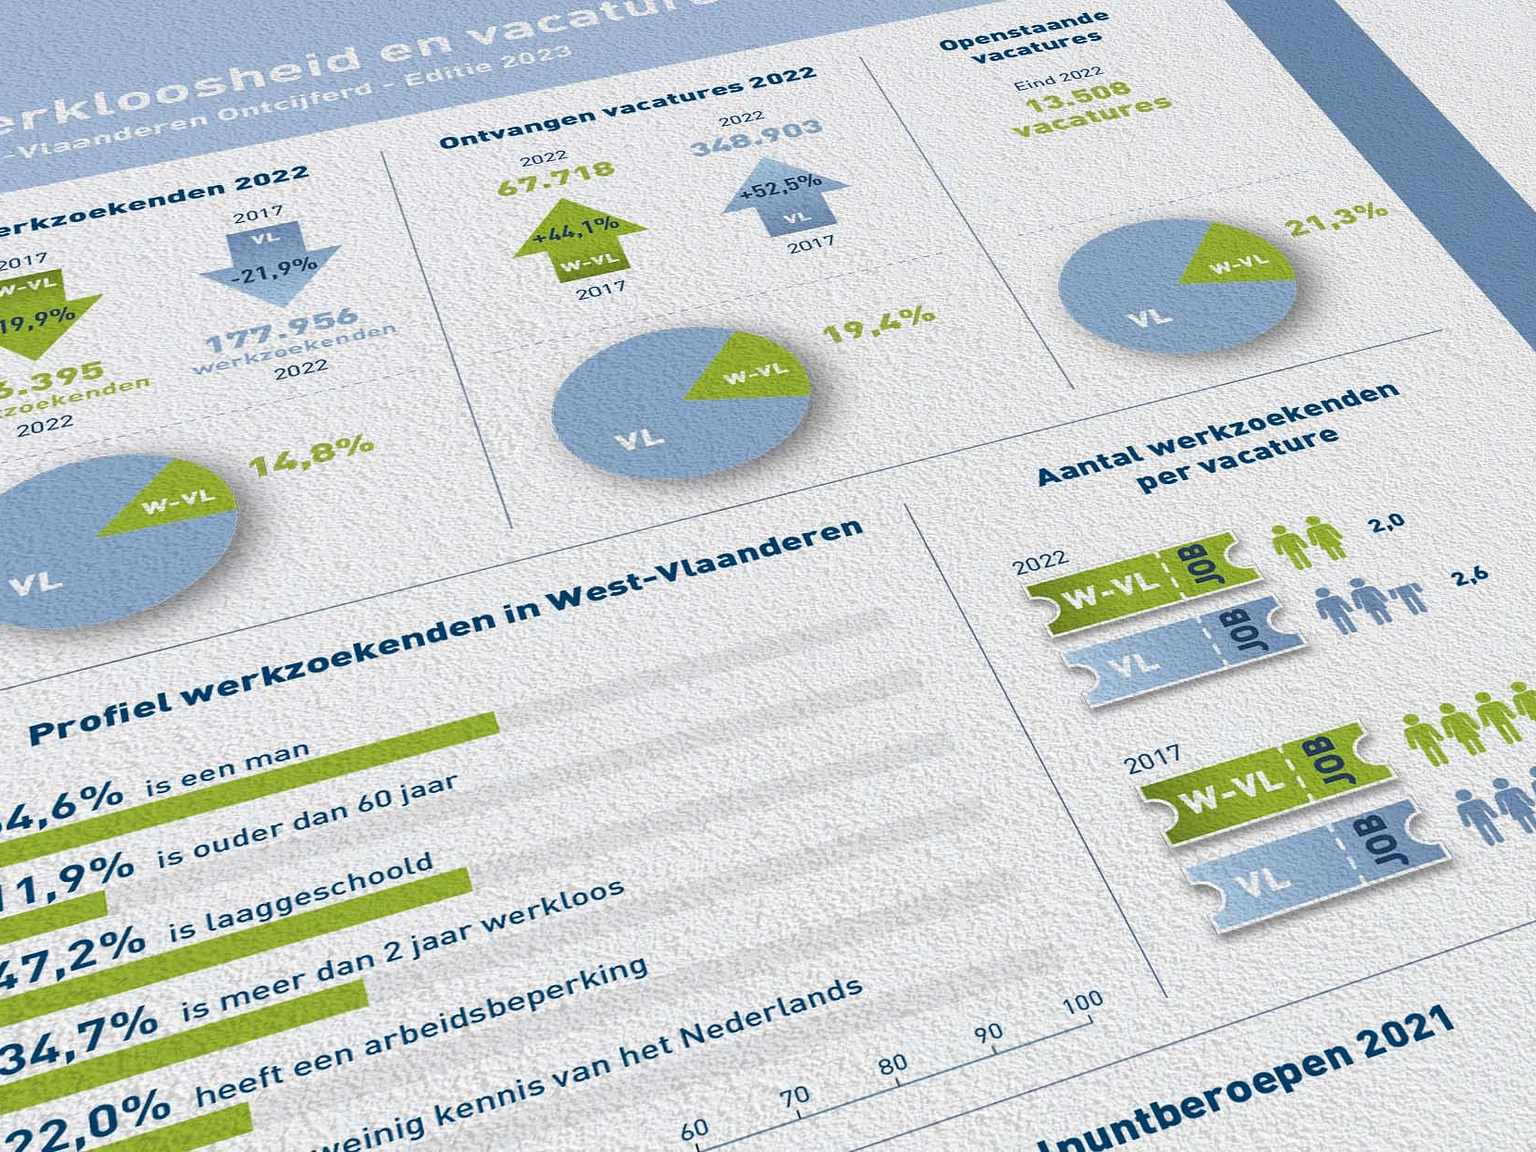 West-Vlaanderen Ontcijferd: werkloosheid en vacatures 2023